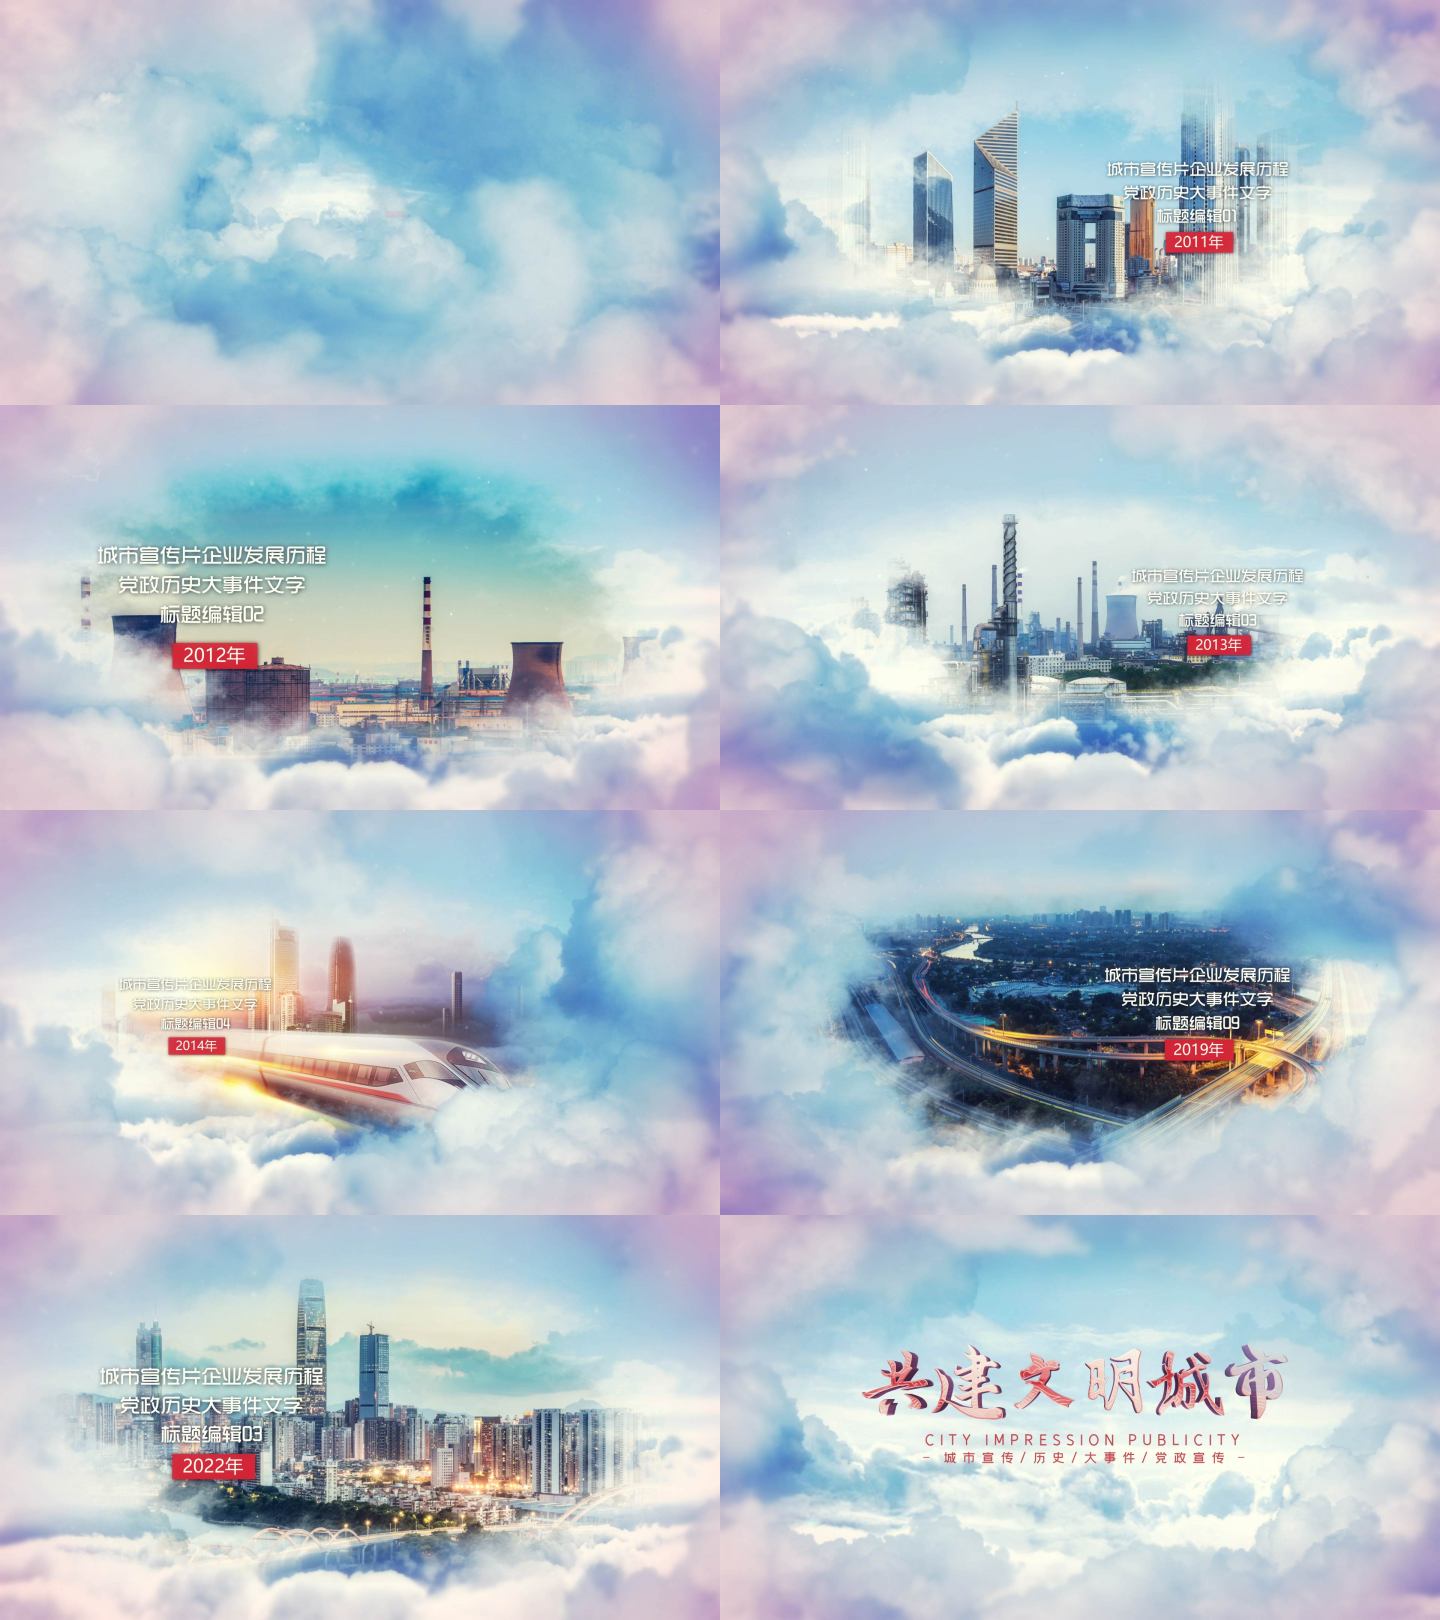 大气云层穿梭城市及企业宣传片图文展示